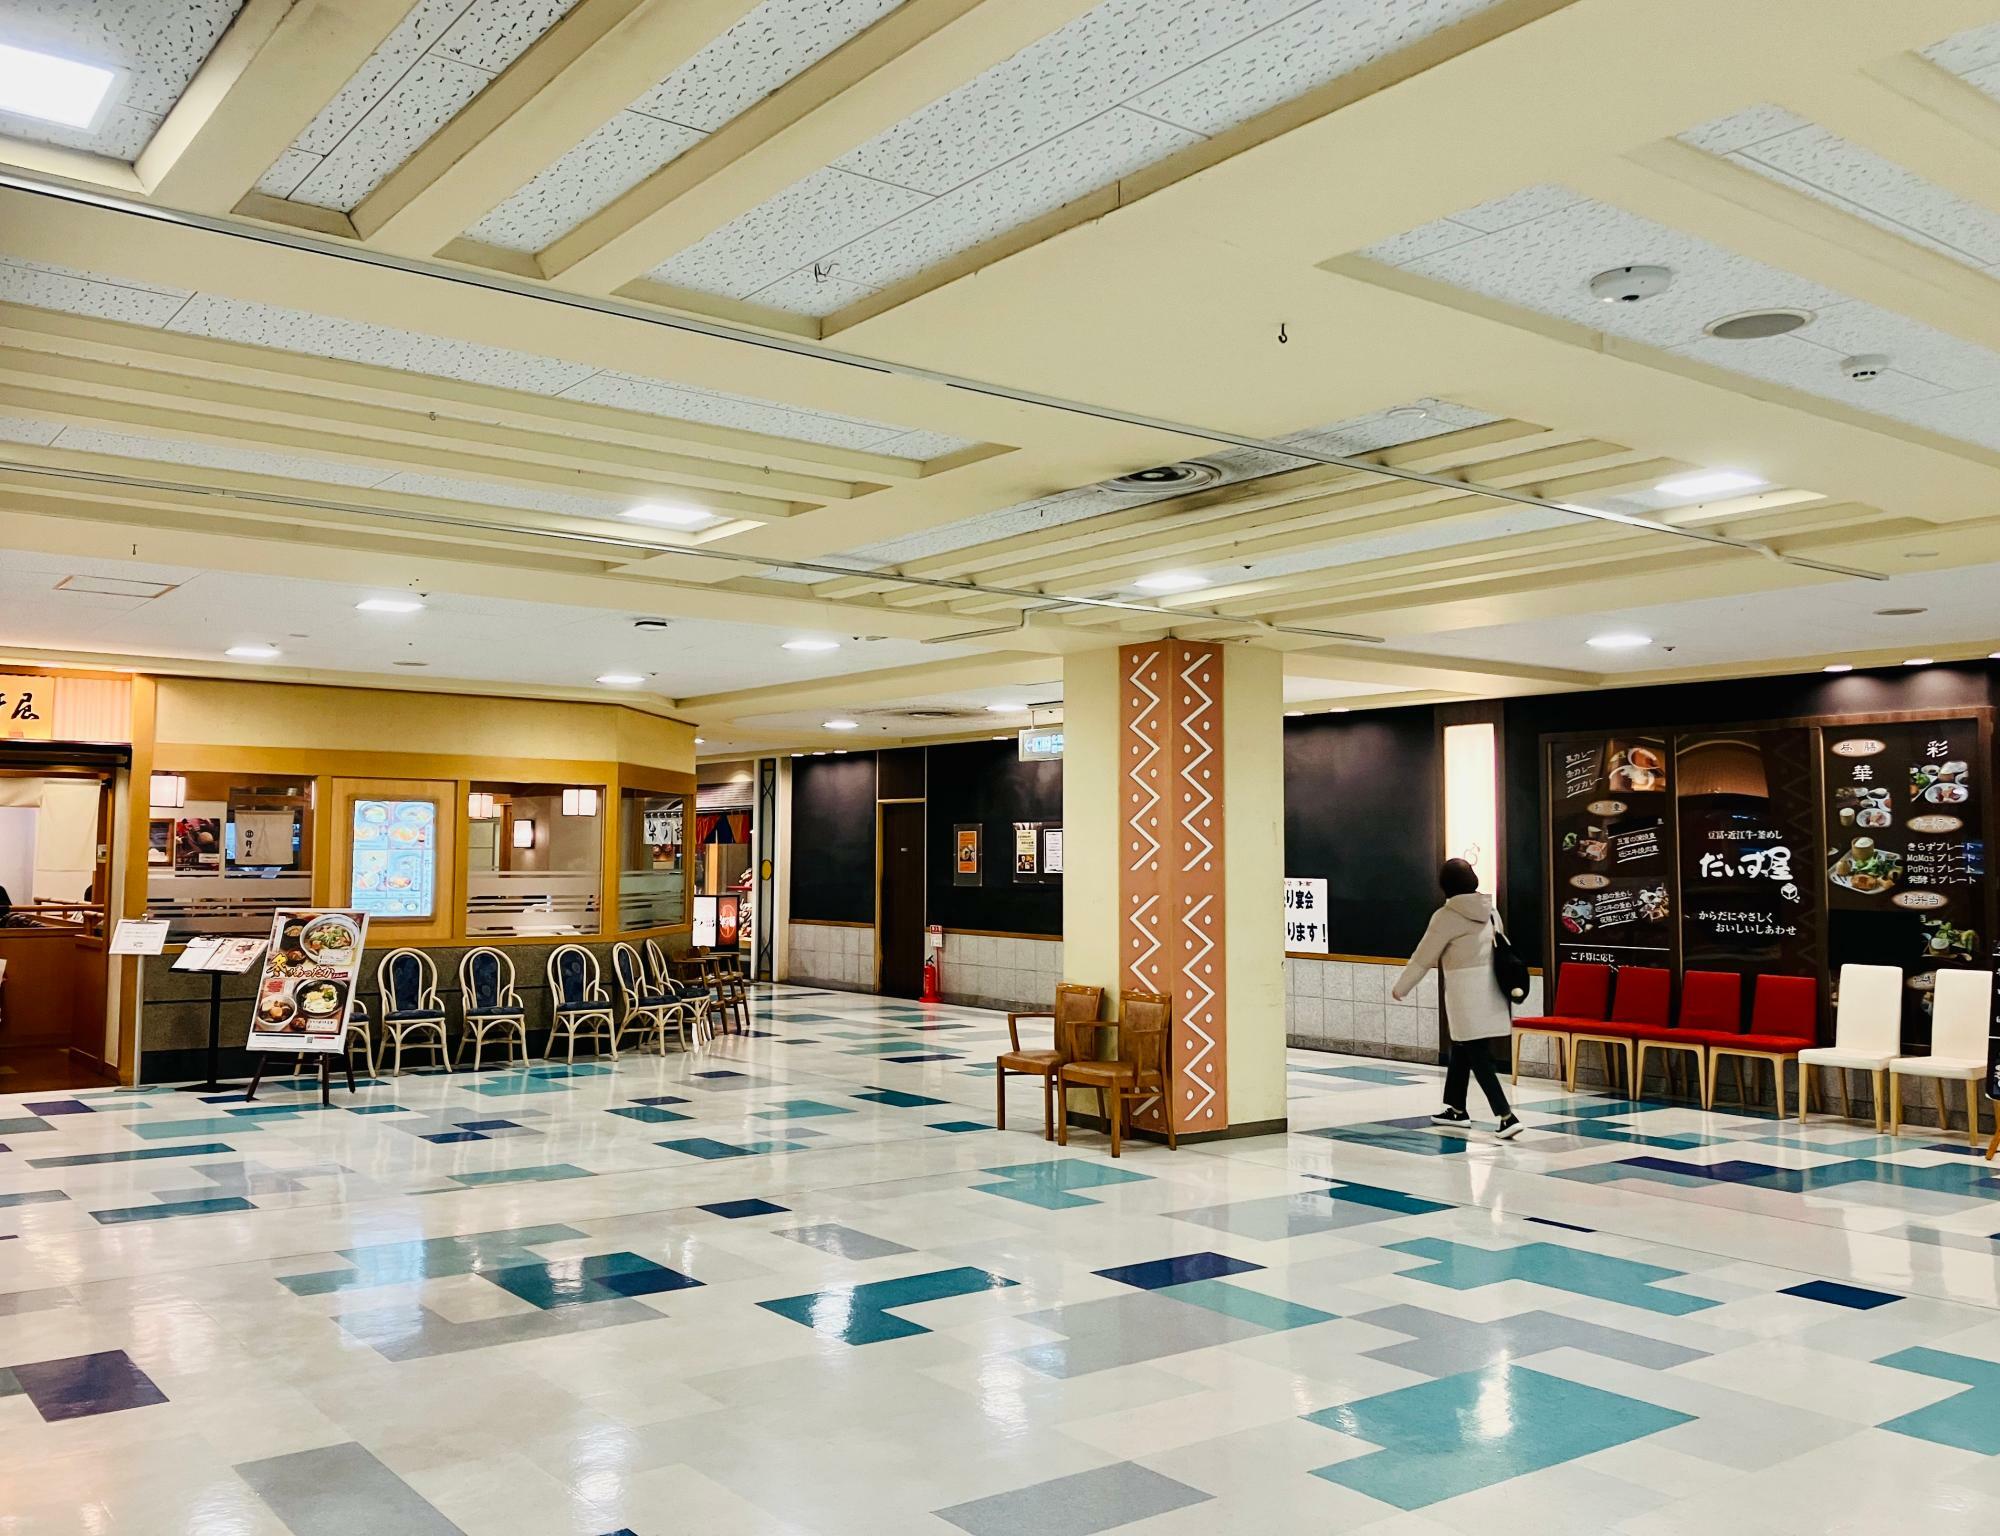 ※画像は、「スカイテラス」さんがオープンする近鉄百貨店草津店5階の様子。